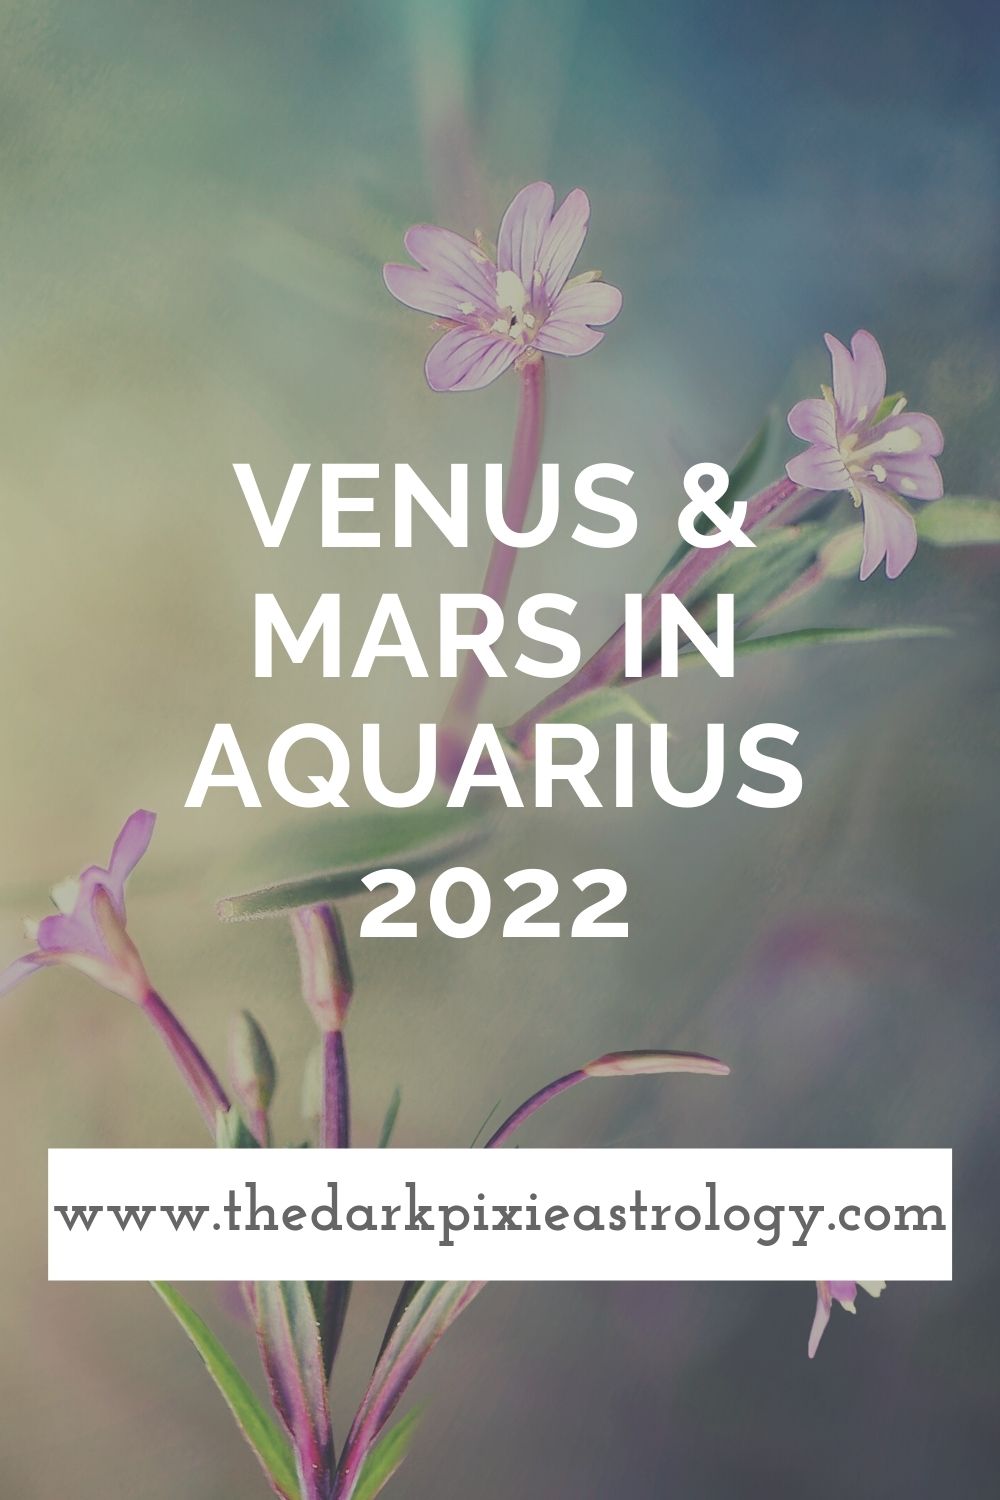 Venus & Mars in Aquarius 2022 - The Dark Pixie Astrology